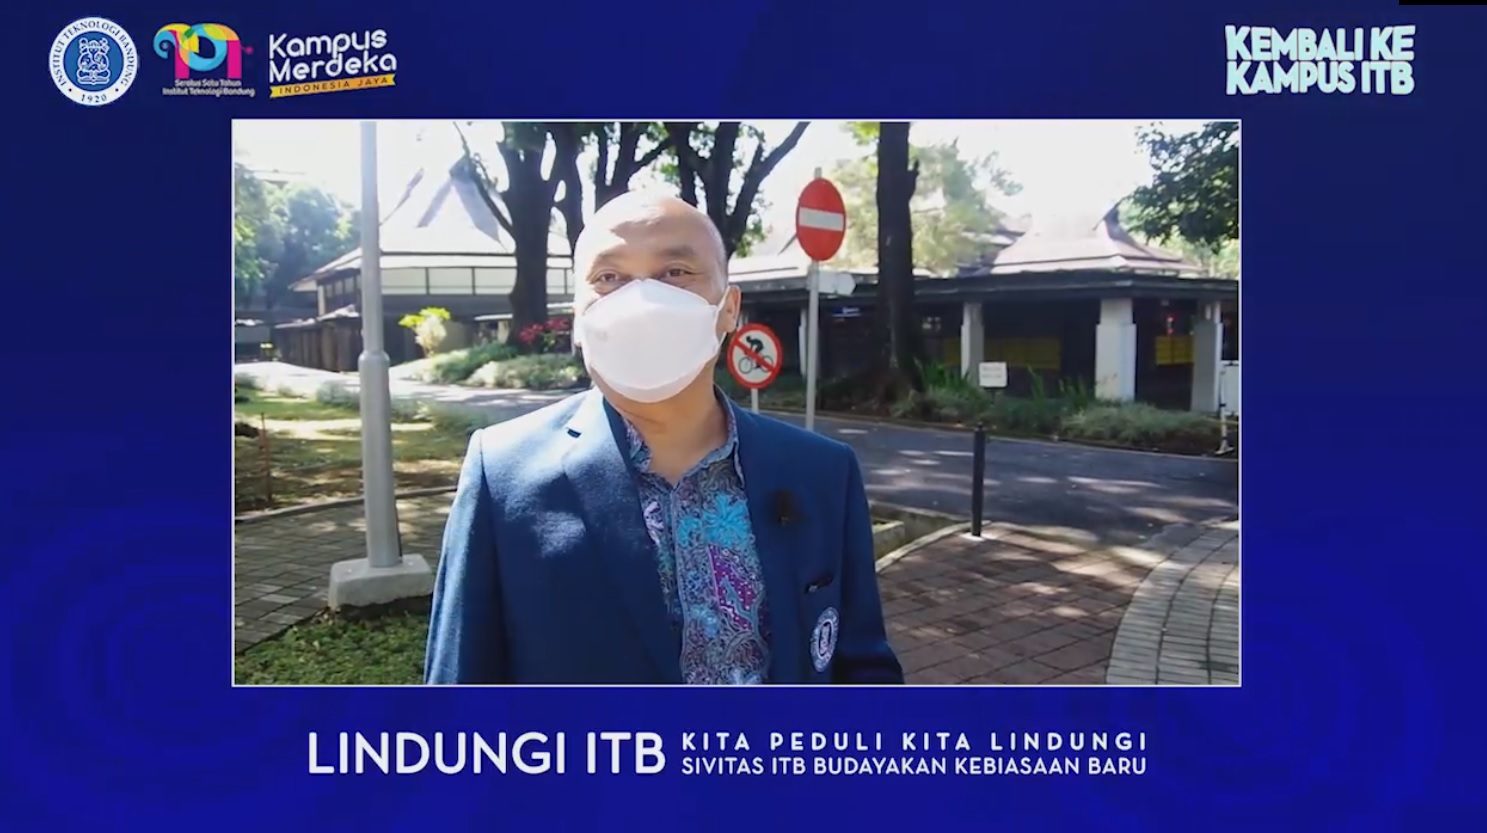 (Indonesia) Kembali ke Kampus Institut Teknologi Bandung (ITB)